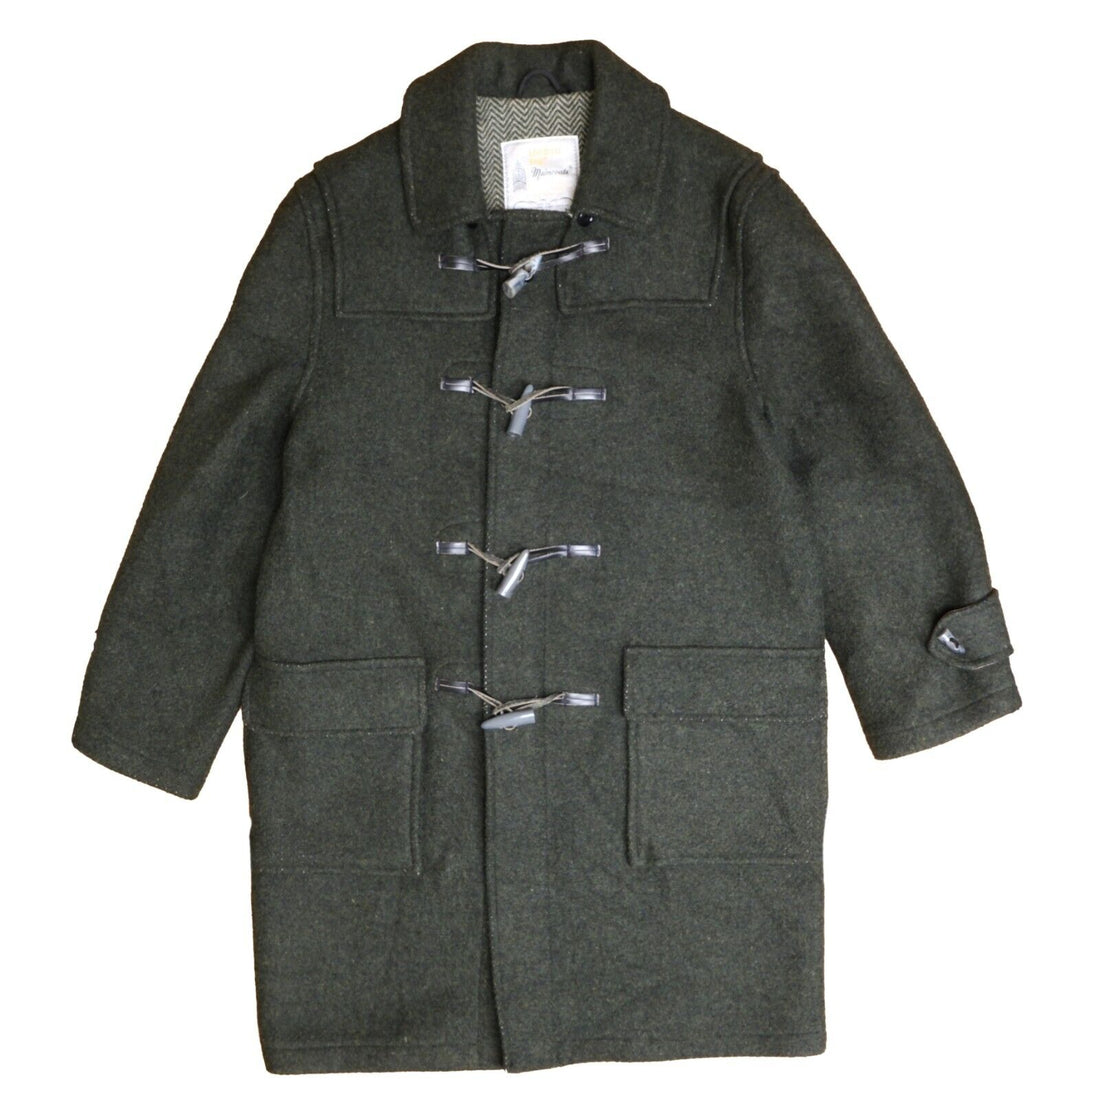 Vintage London Fog Maincoats Duffle Coat Jacket Size 36